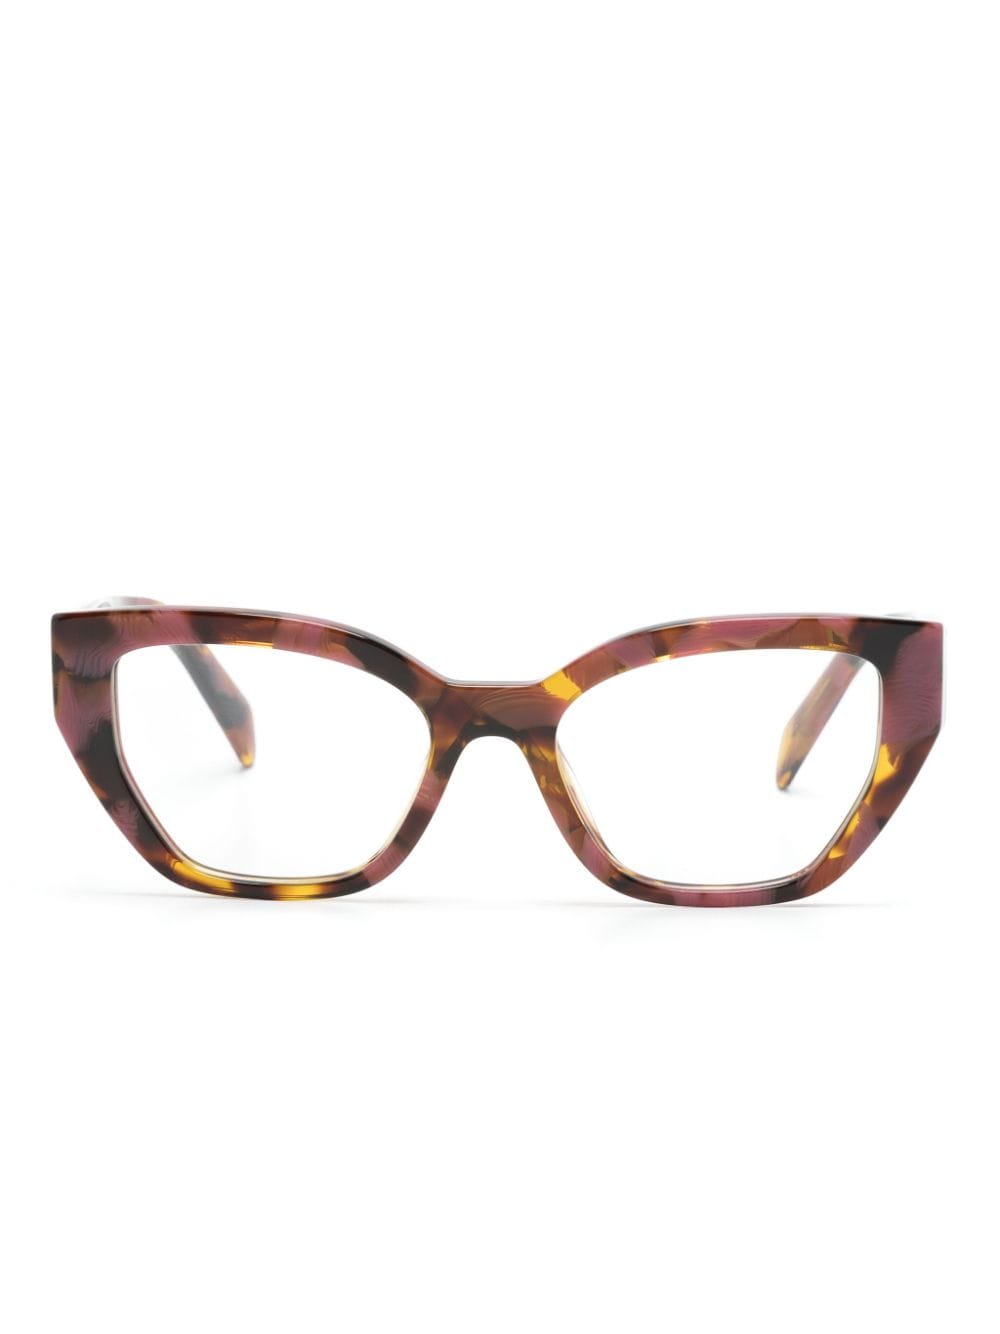 Prada Tortoiseshell Cat-eye Glasses In Multi